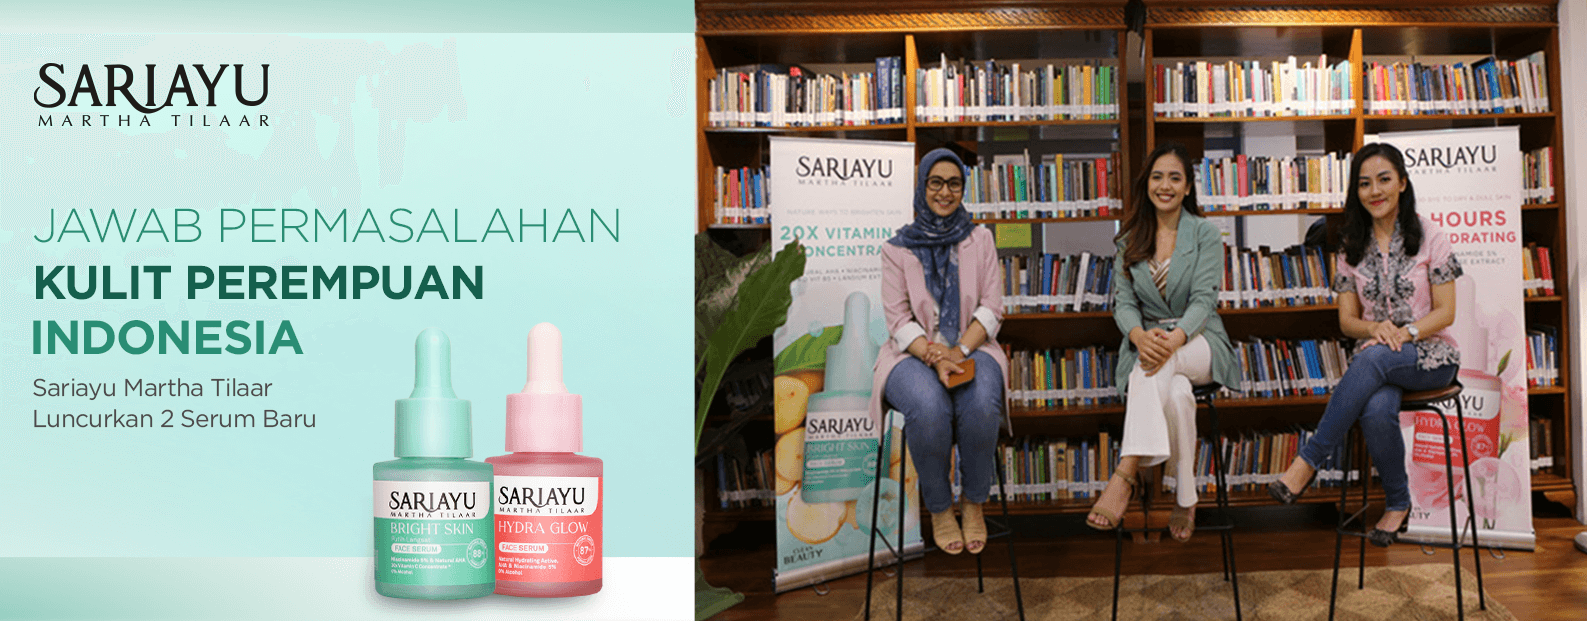 Jawab Permasalahan Kulit Perempuan Indonesia, Sariayu Martha Tilaar Luncurkan 2 Serum Baru  